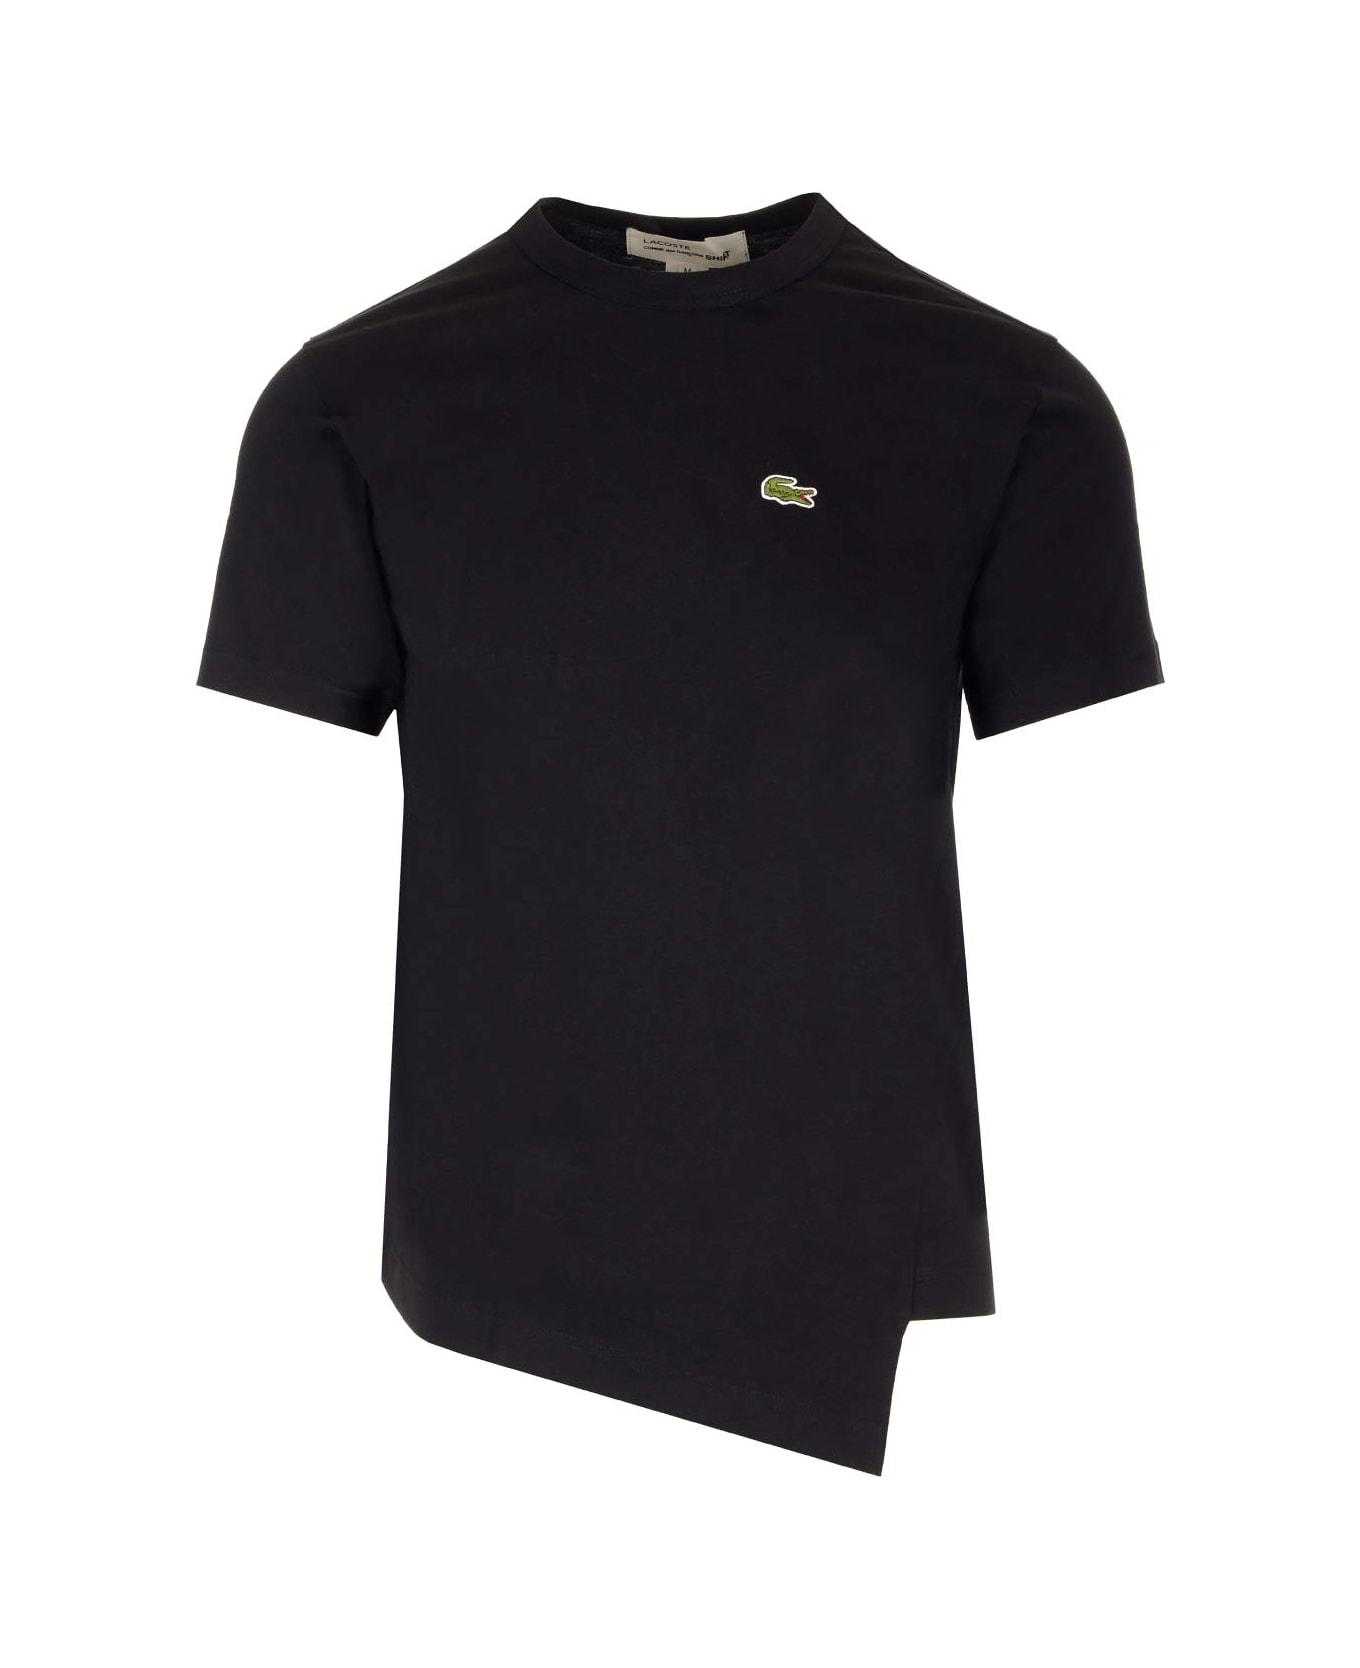 Comme des Garçons Shirt Black Asymmetric T-shirt X La Coste - Black